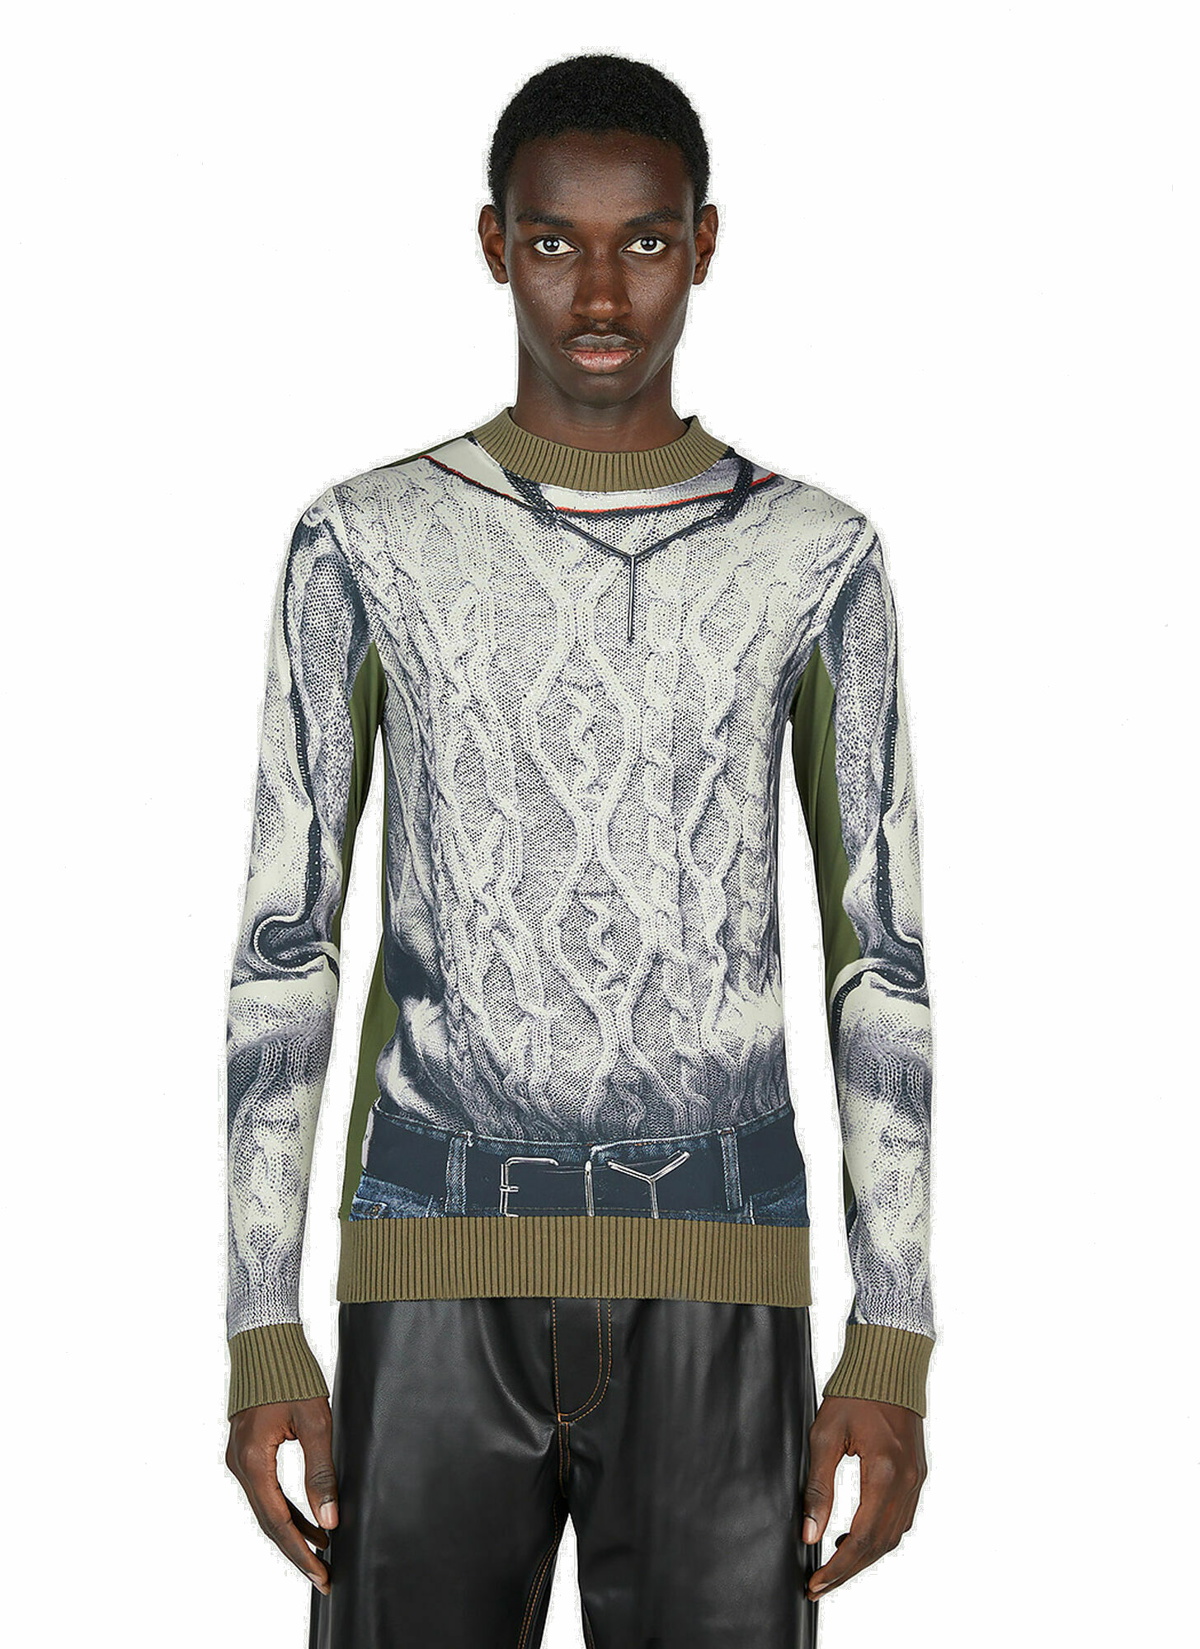 Y/Project x Jean Paul Gaultier - Trompe L'Oeil Belt T-Shirt in